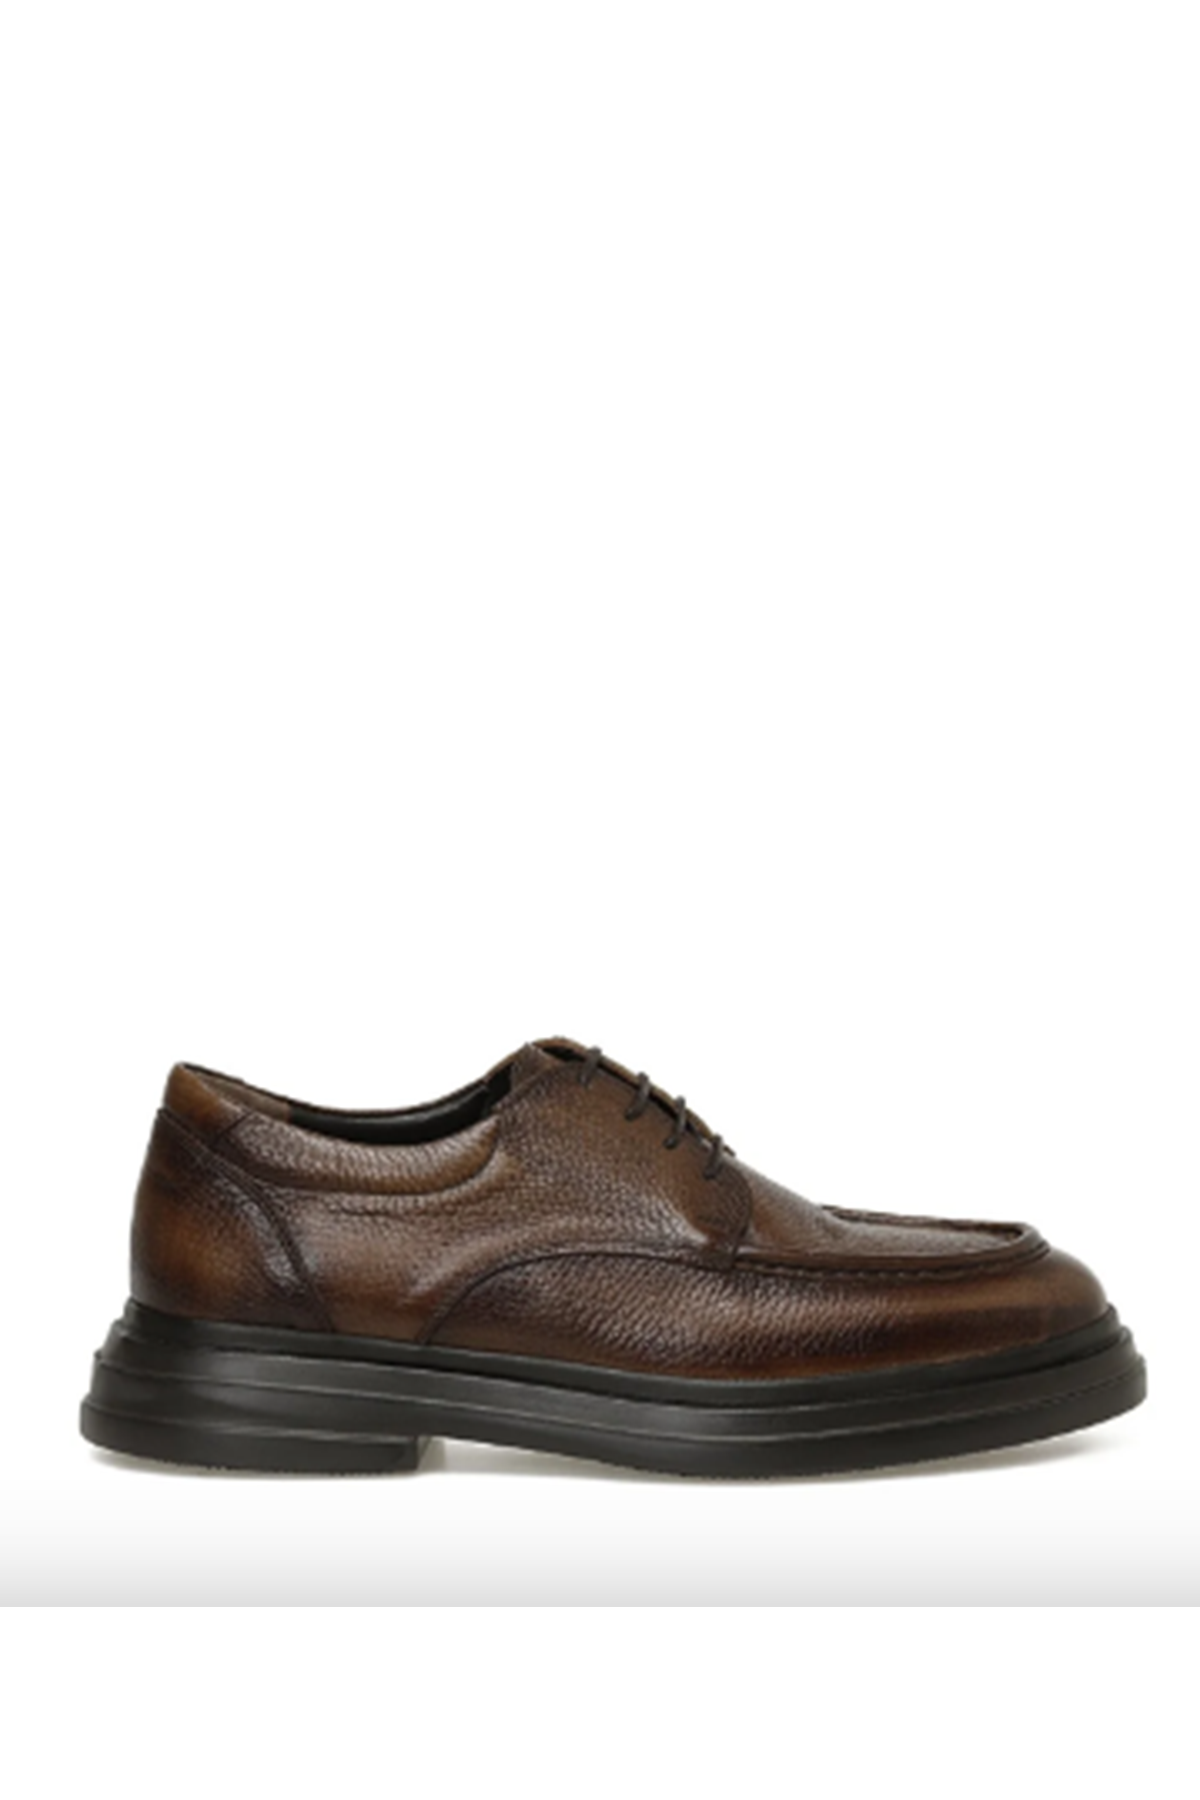 Boy Uzatan Ayakkabı Gizli Topuklu Hakiki Deri MICHEAL 3PR Kahverengi Erkek Klasik Ayakkabı MYY243